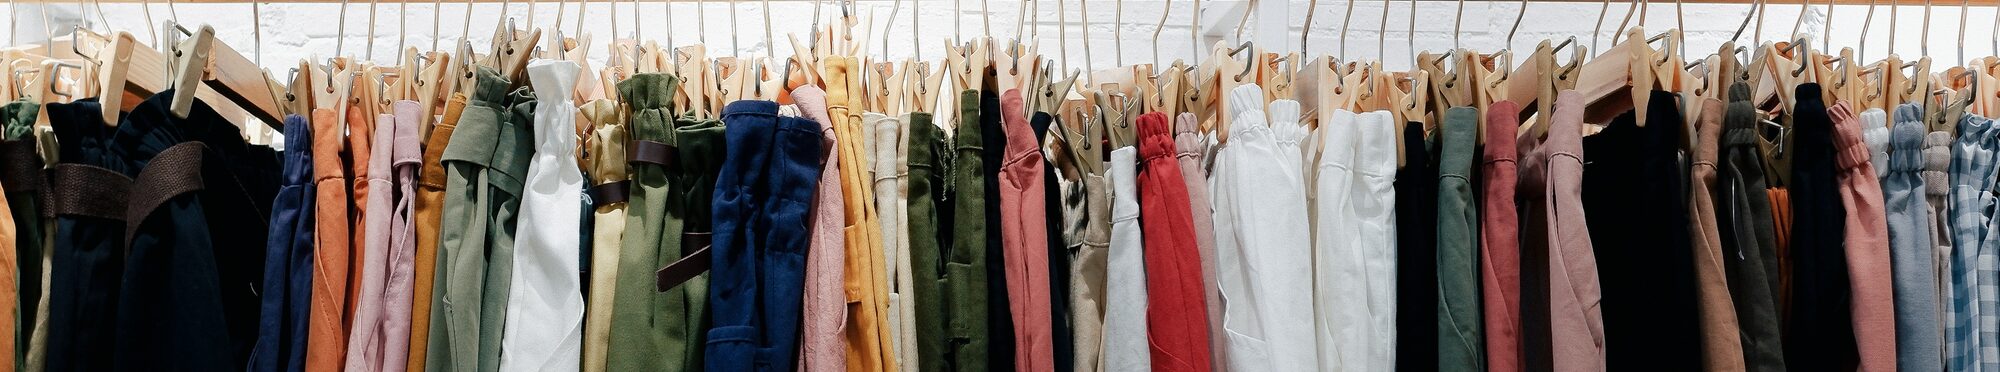 Viele Kleider hängen an Kleiderstange